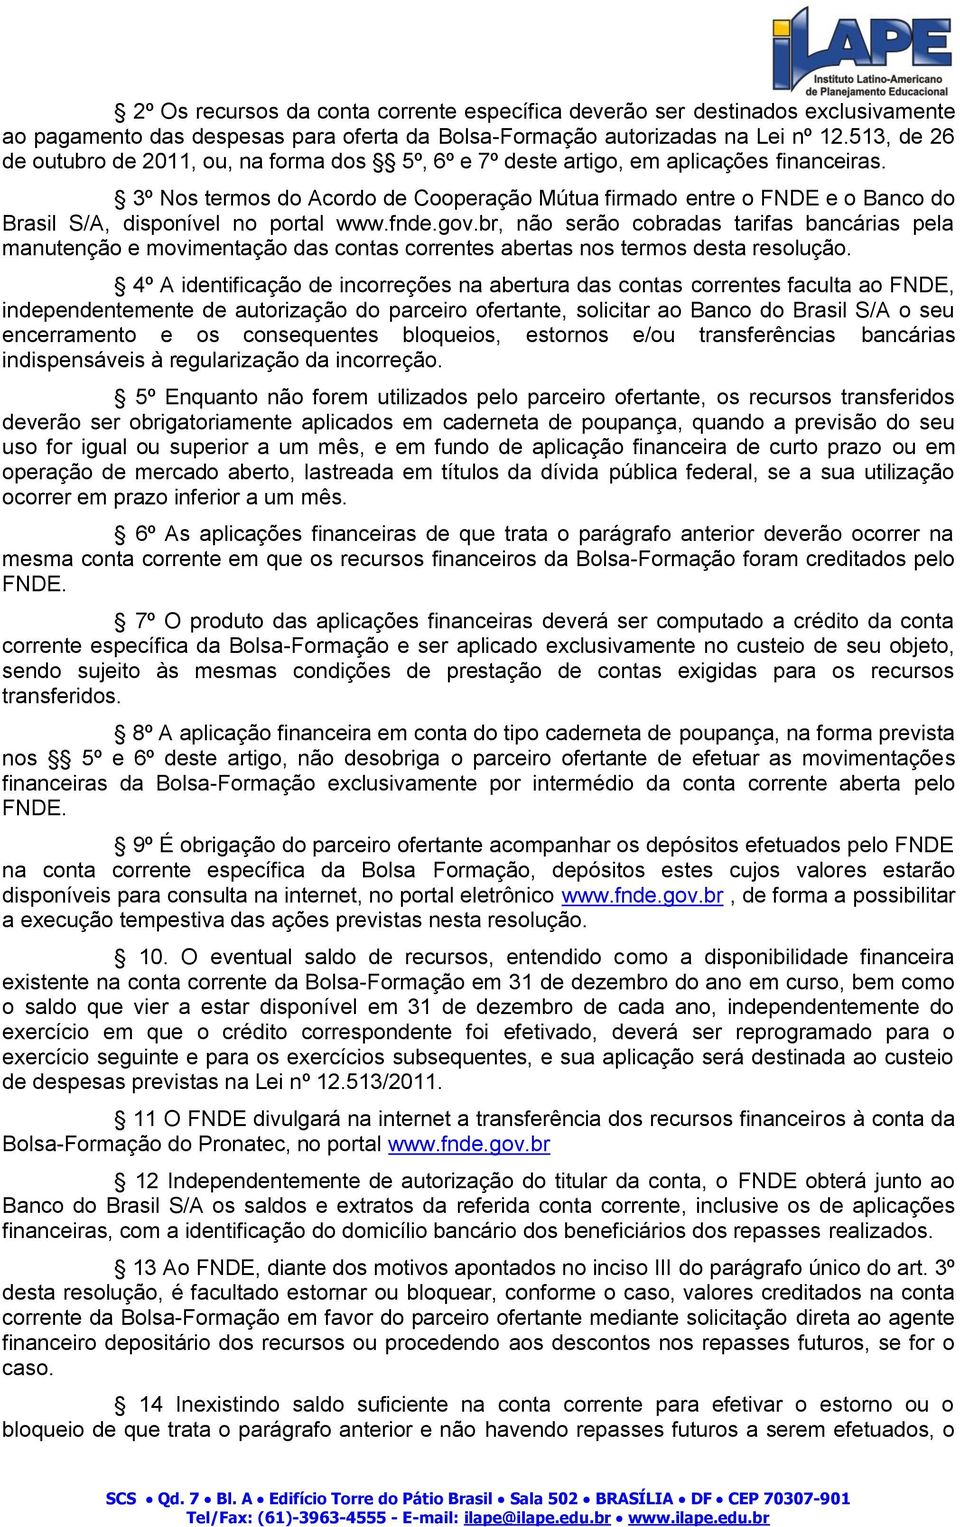 3º Nos termos do Acordo de Cooperação Mútua firmado entre o FNDE e o Banco do Brasil S/A, disponível no portal www.fnde.gov.